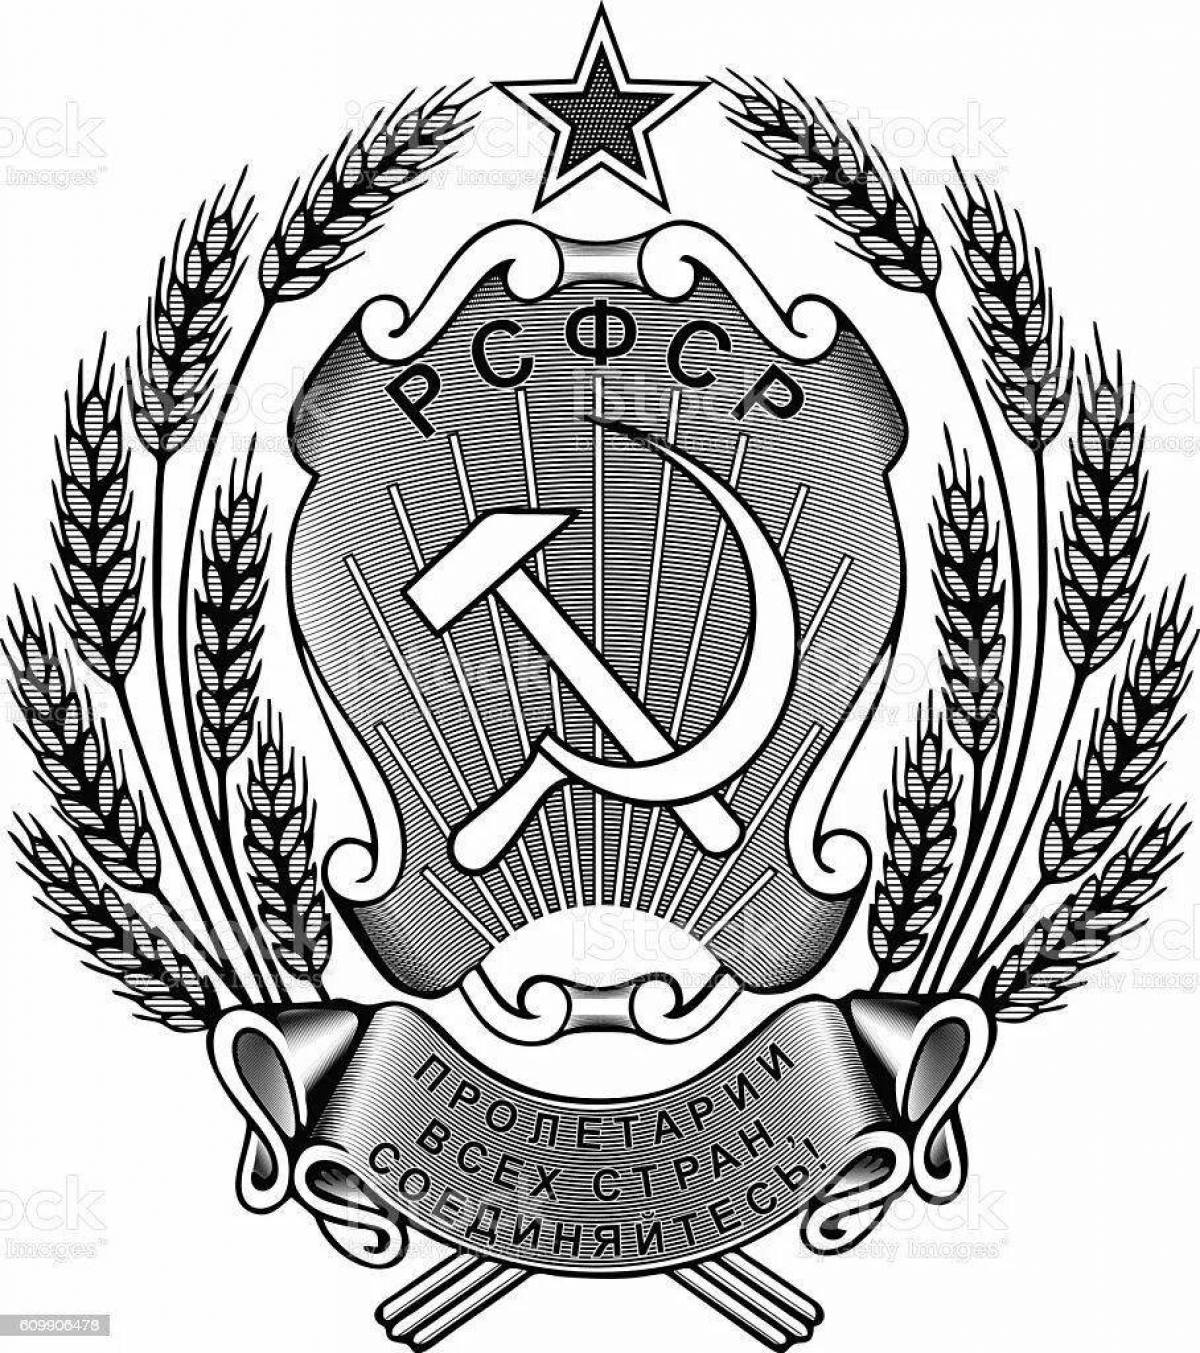 Герб украинской ССР вектор